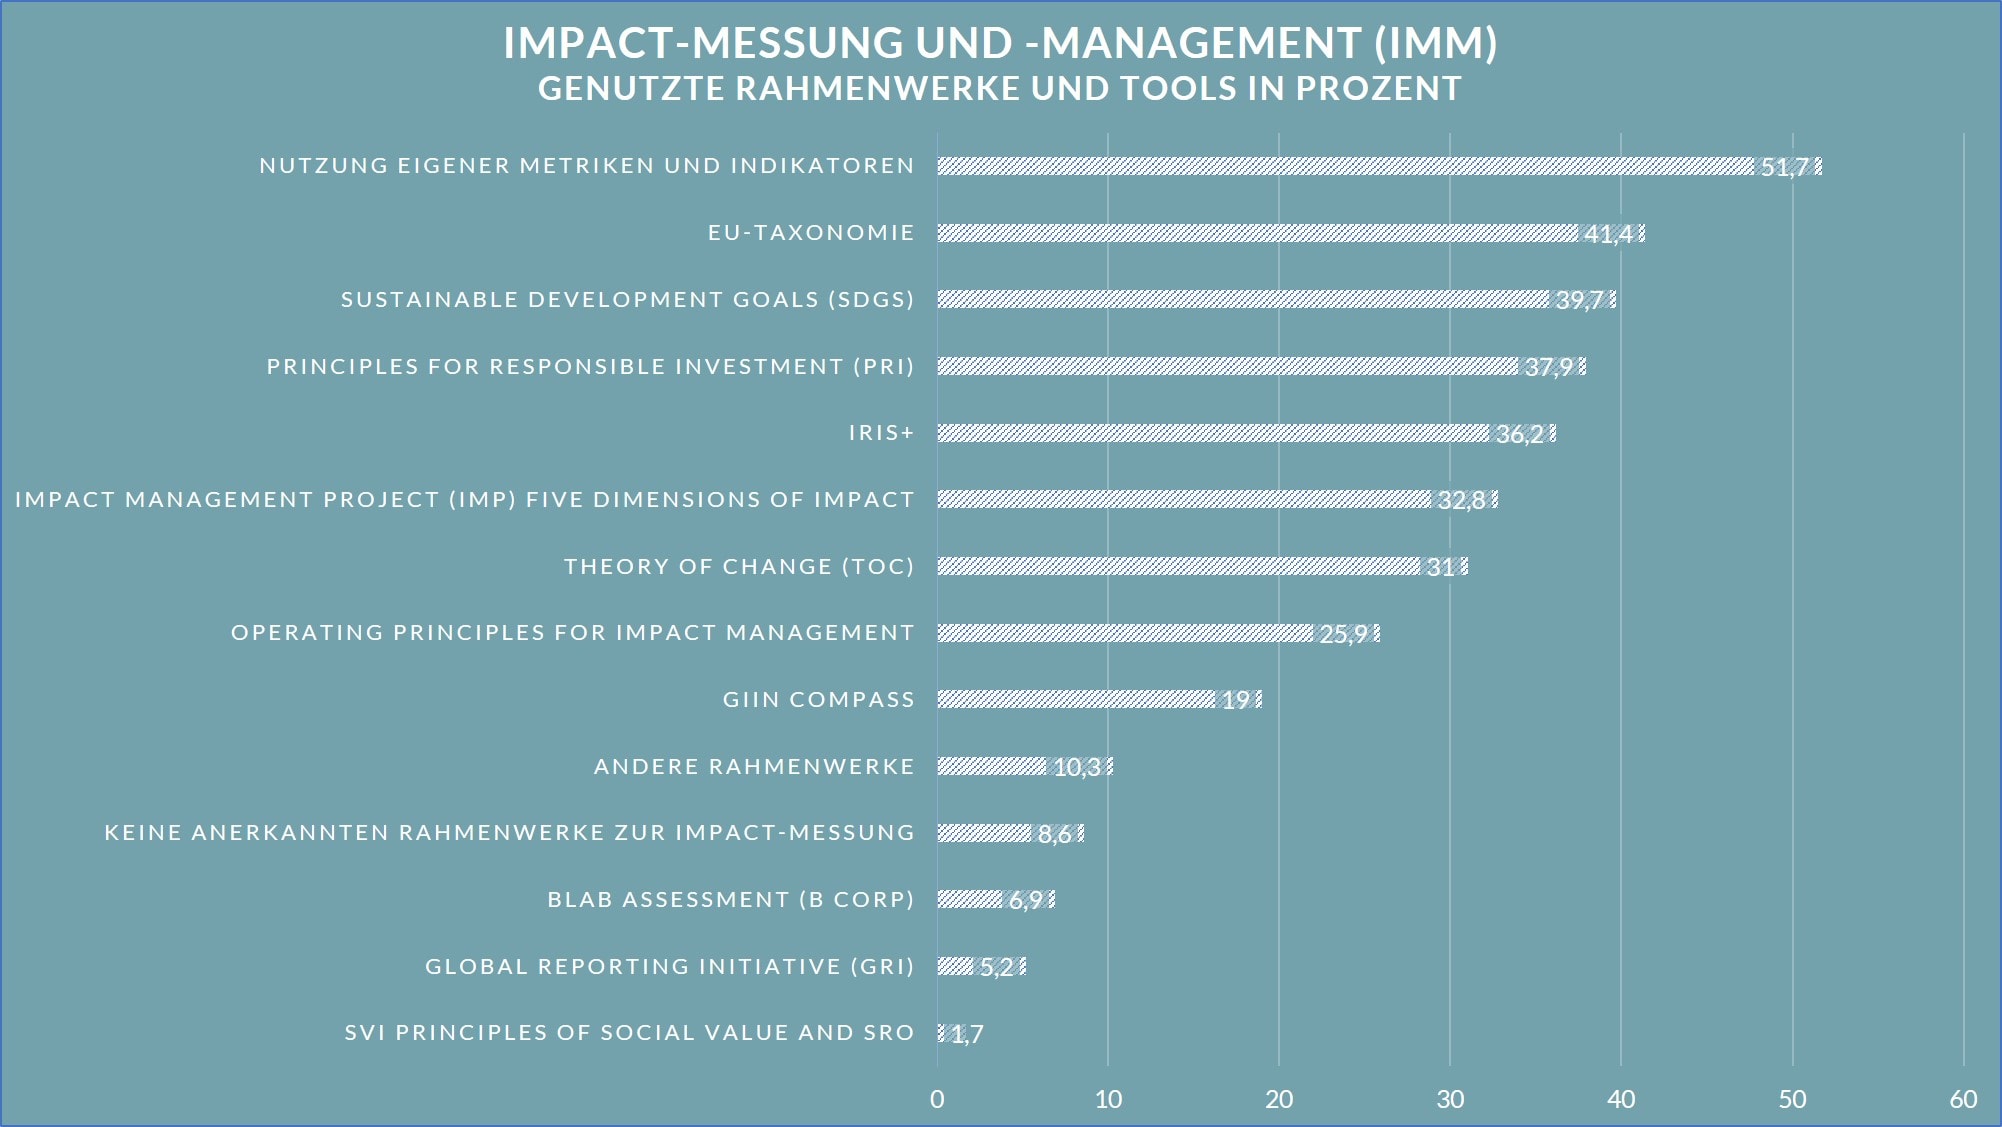 Balkendiagramm, welches die genutzten Rahmenwerke und Tools bei Impact-Messung und -management zeigt, in Prozent.